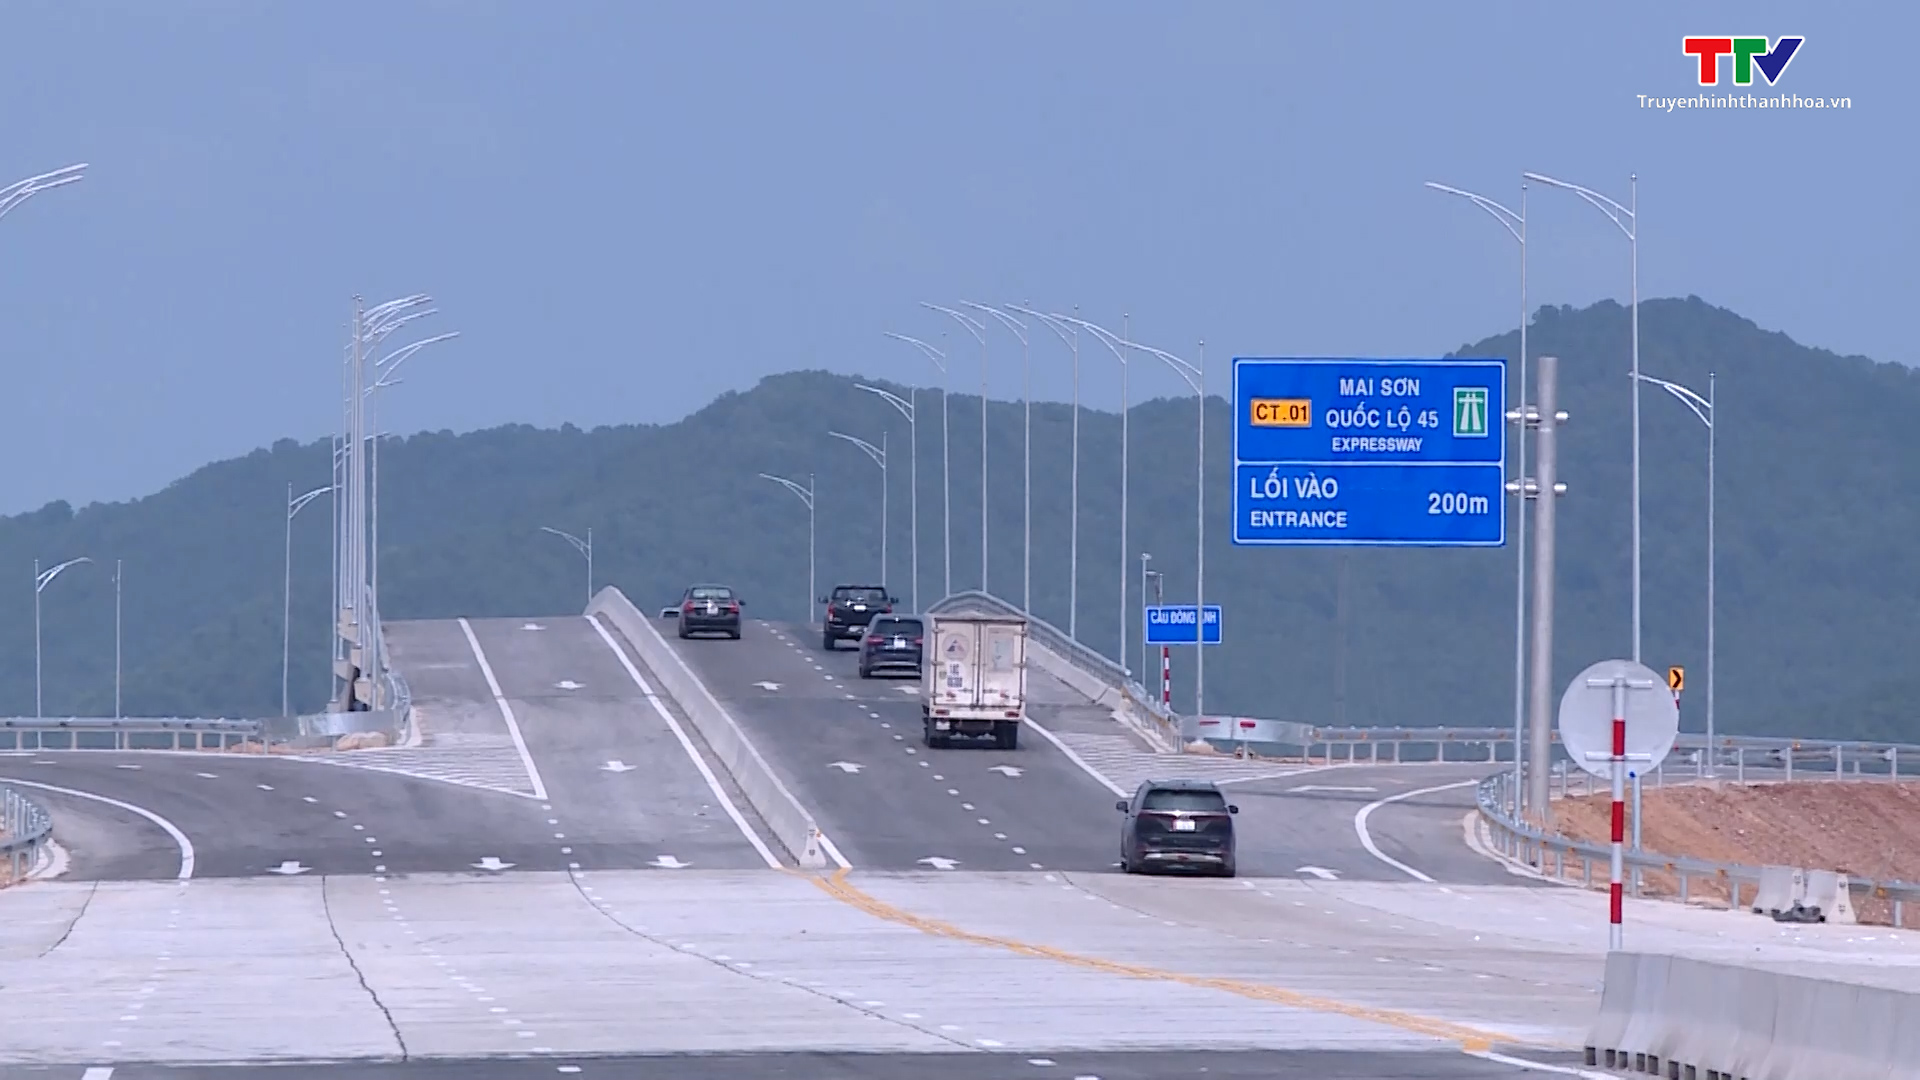 Cần tuân thủ quy định phân luồng giao thông trên đường cao tốc Bắc Nam, đoạn Mai Sơn- quốc lộ 45 - Ảnh 2.